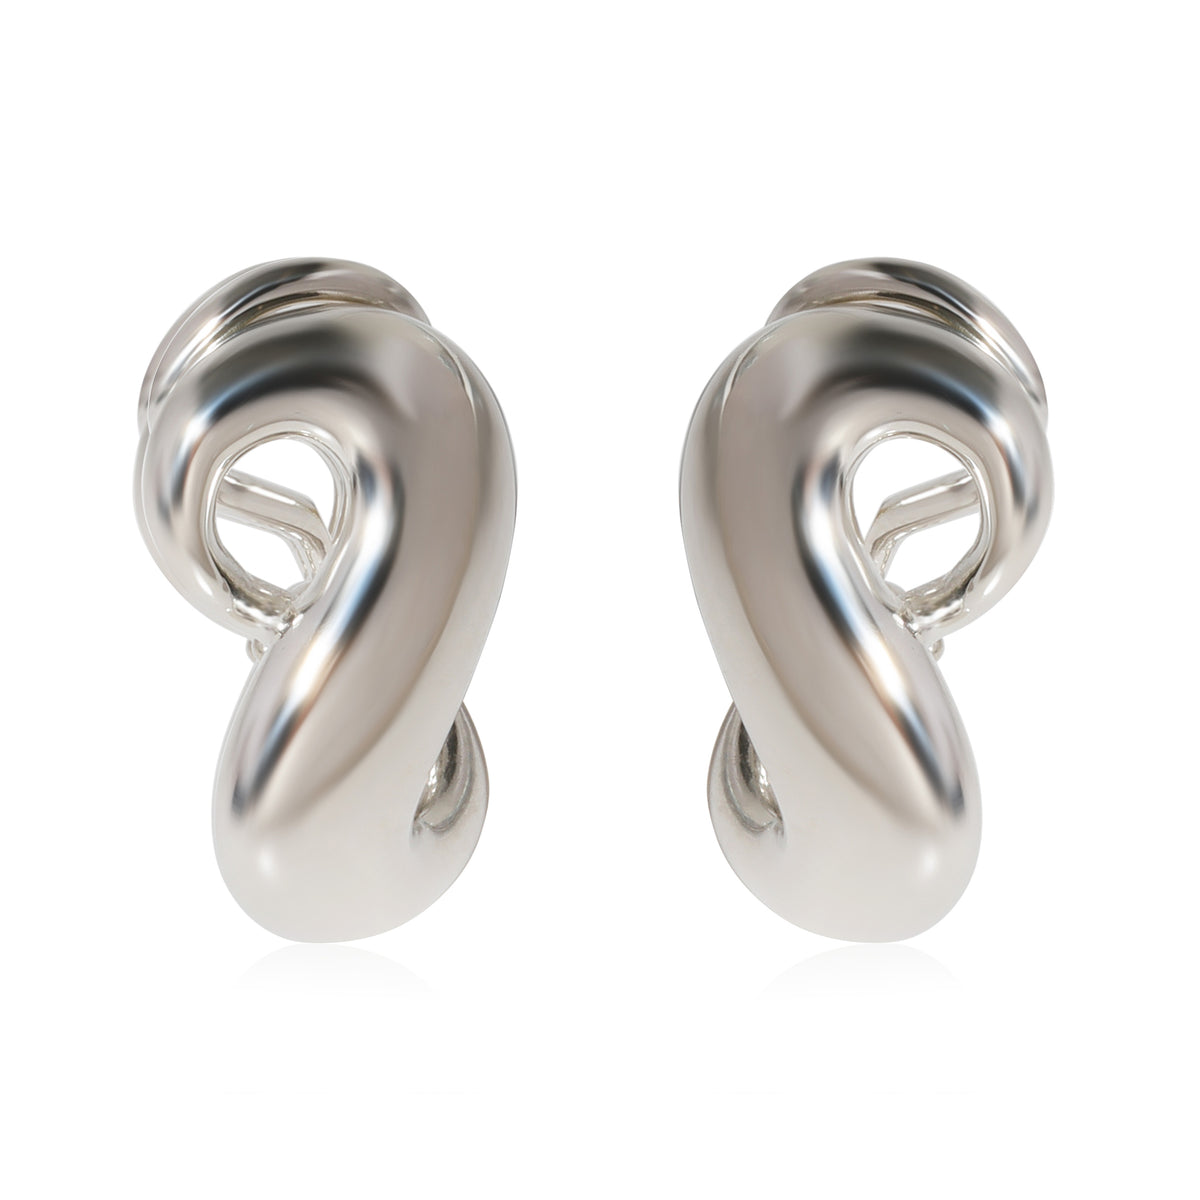 Used B/Standard] TIFFANY&Co. Tiffany Infinity Pearl Silver 925 Women's  Earrings Silver 20433276